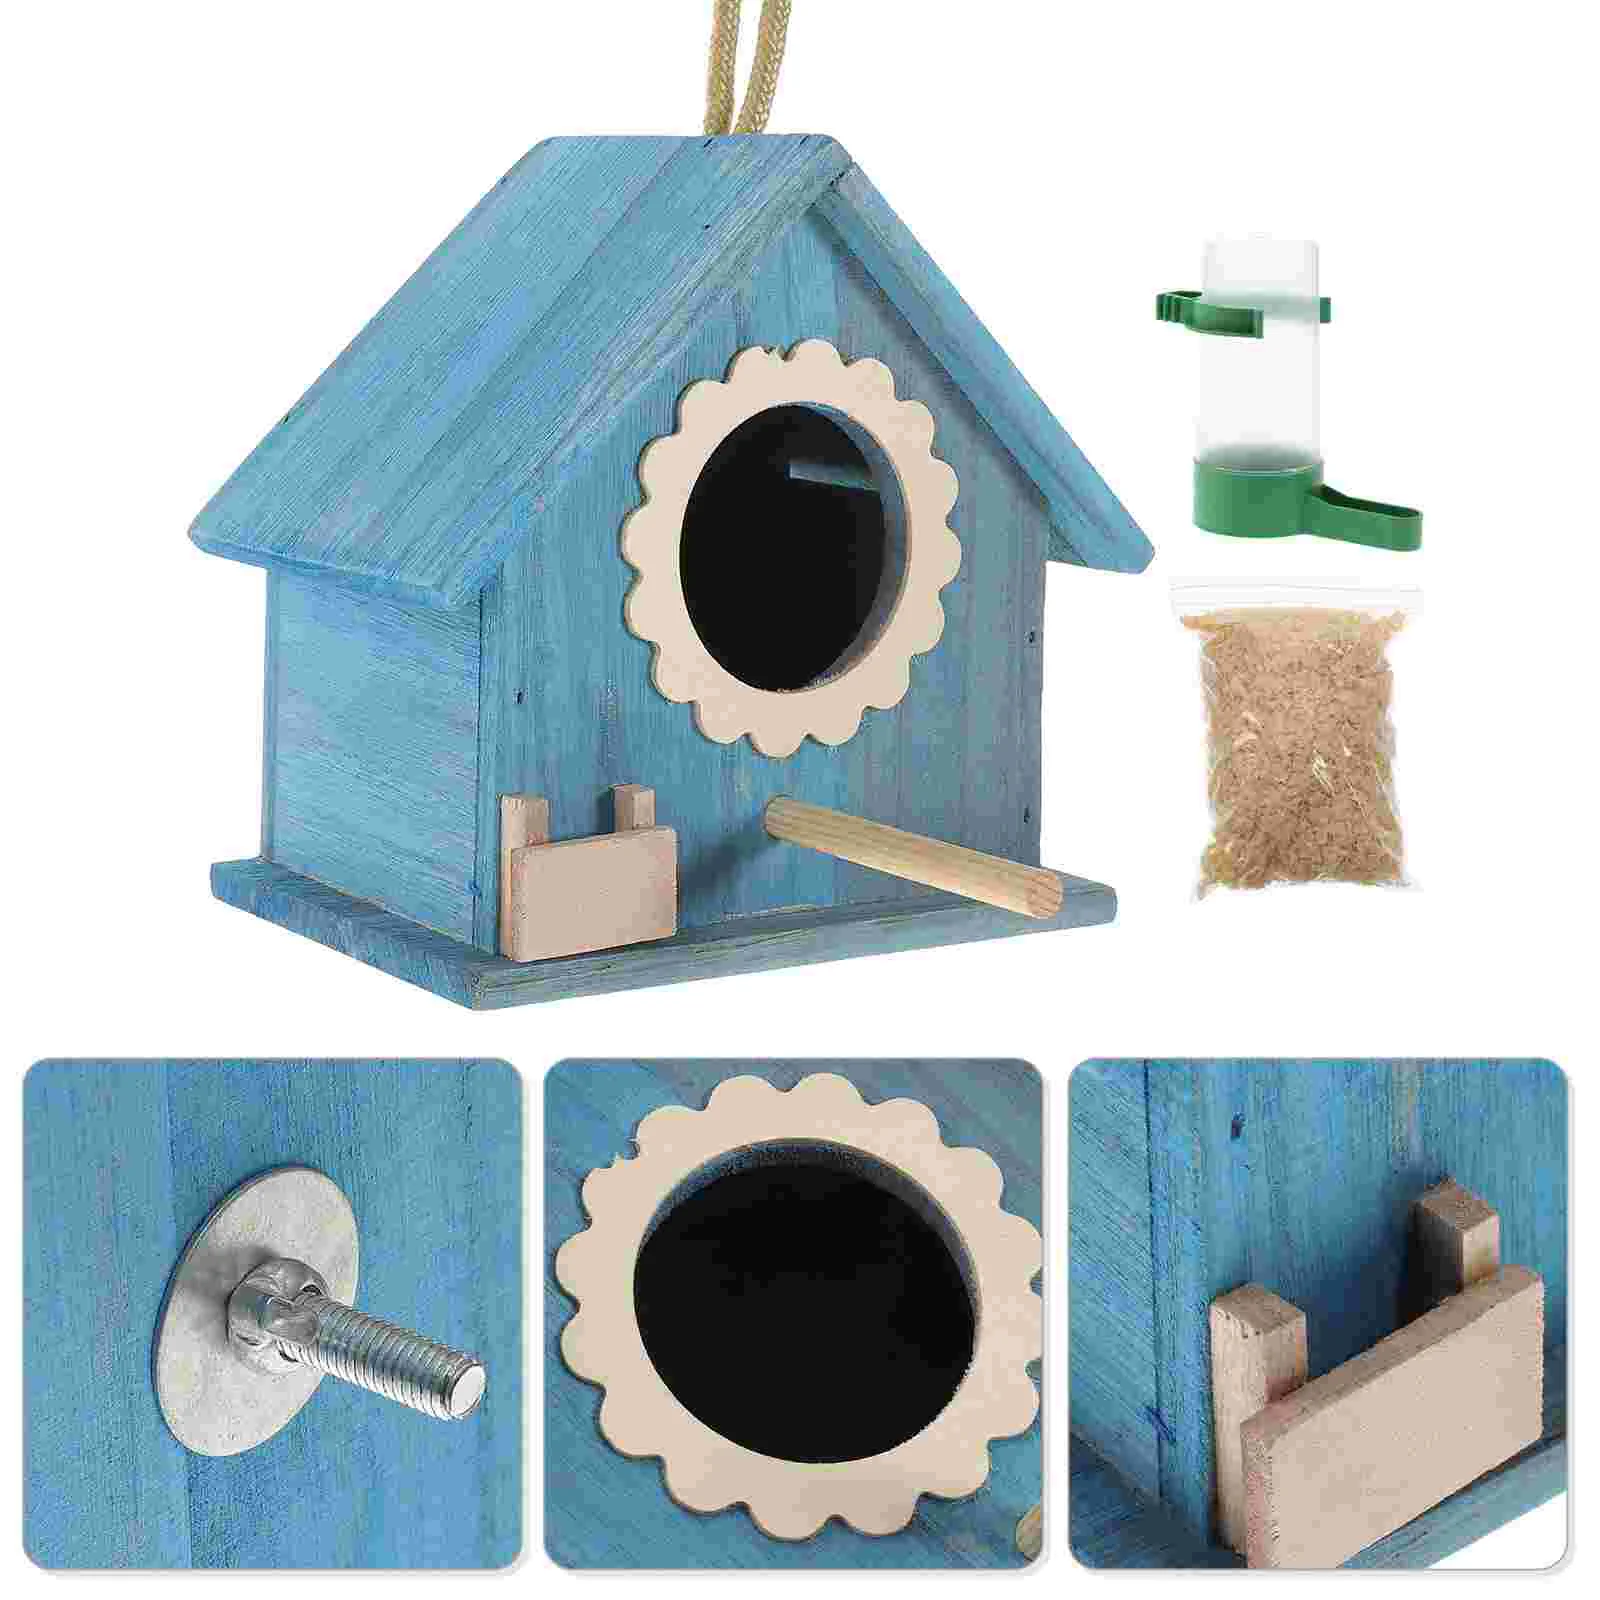 Wooden Birdhouses For Outside Nest Birdcage For Outdoors Parakeet The Bird's Feeder Birdhouses Plastic Lamb Decor